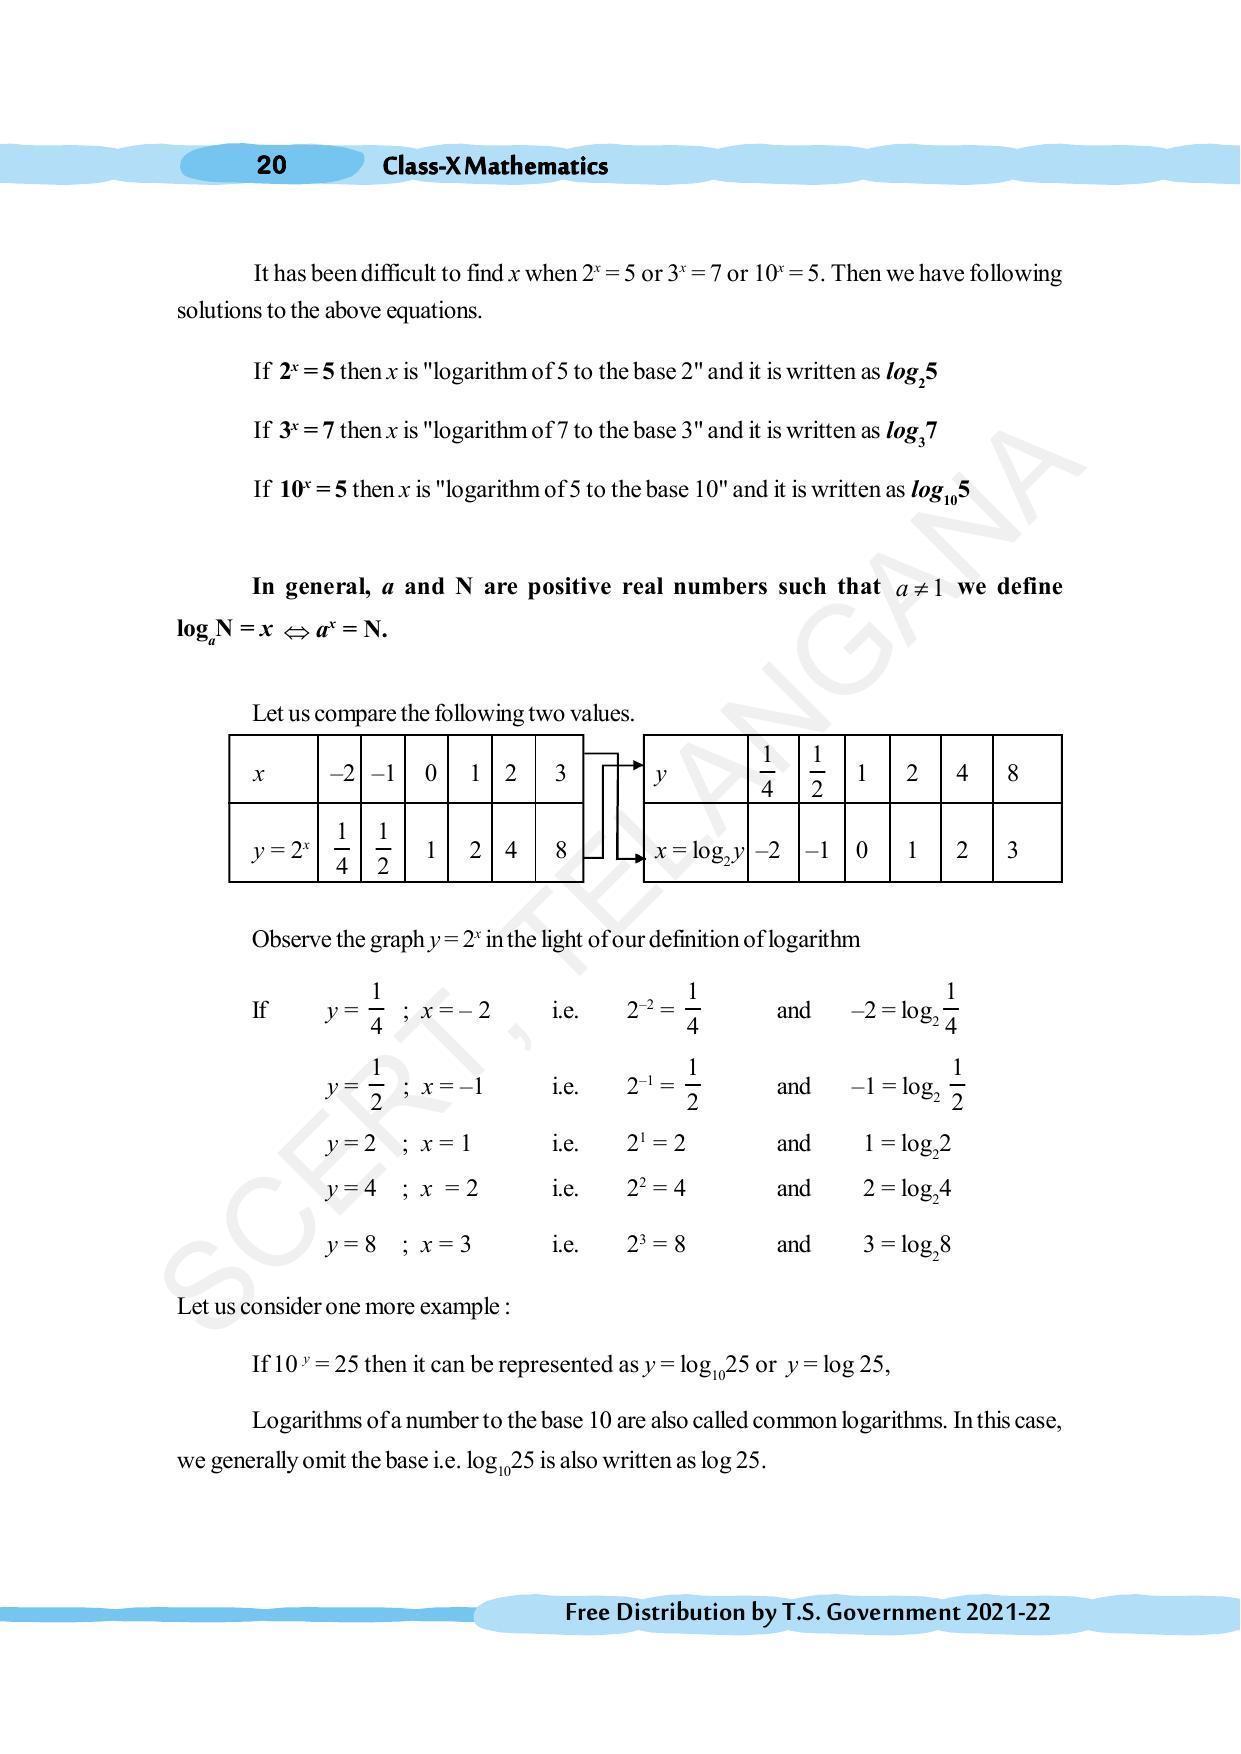 TS SCERT Class 10 Maths (English Medium) Text Book - Page 30